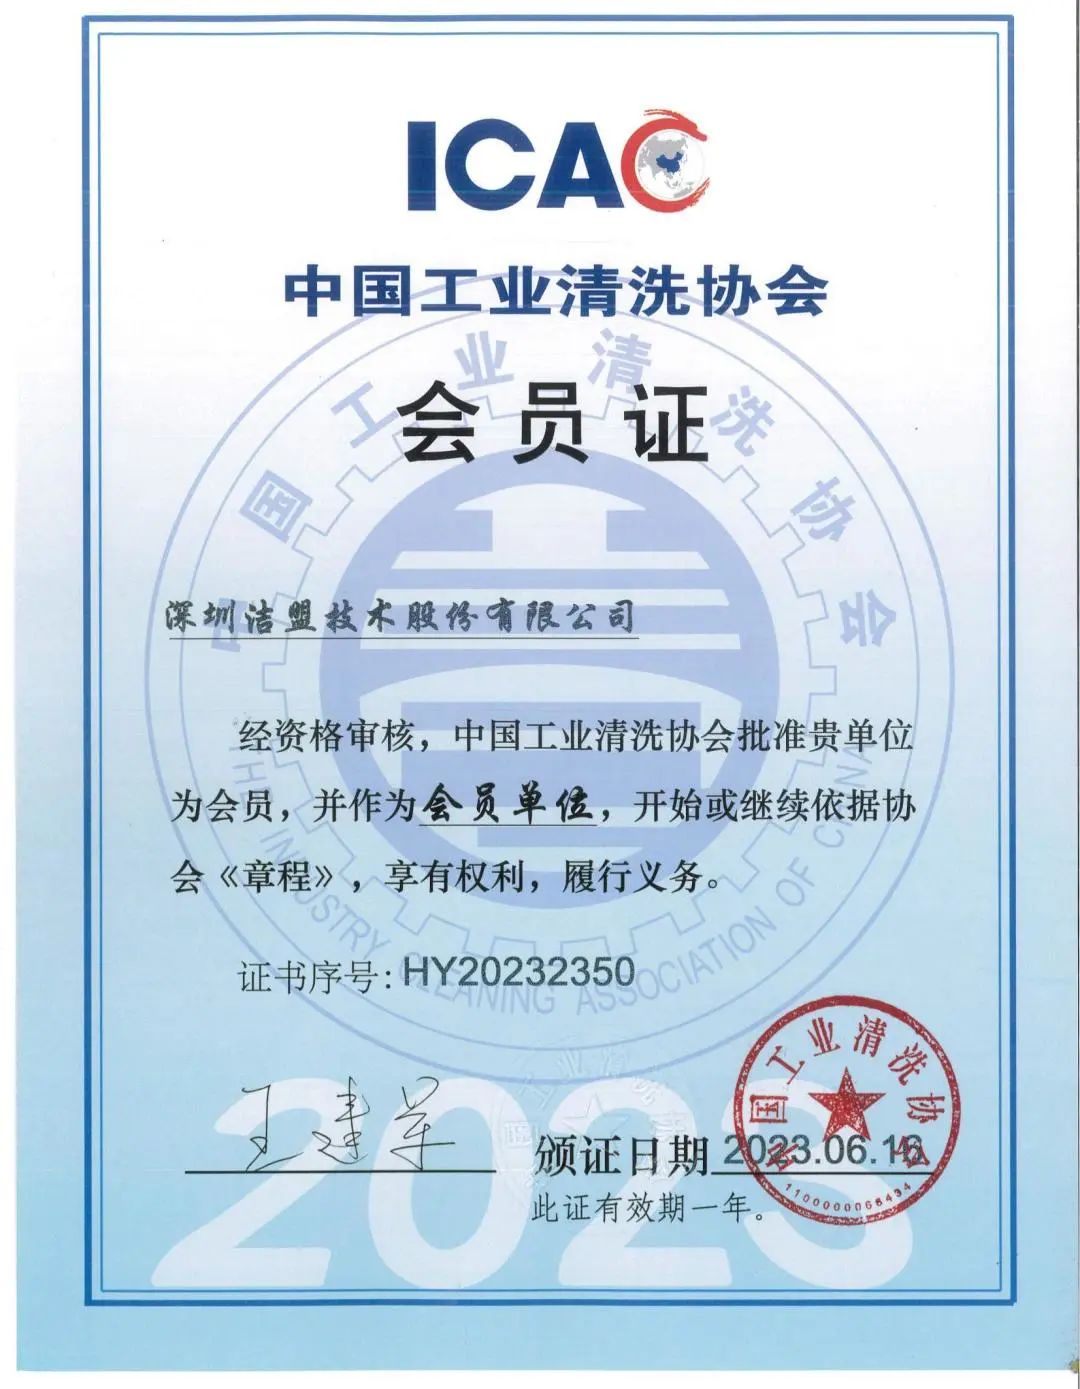 深圳洁盟技术股份有限公司中国工业清洗协会会员证